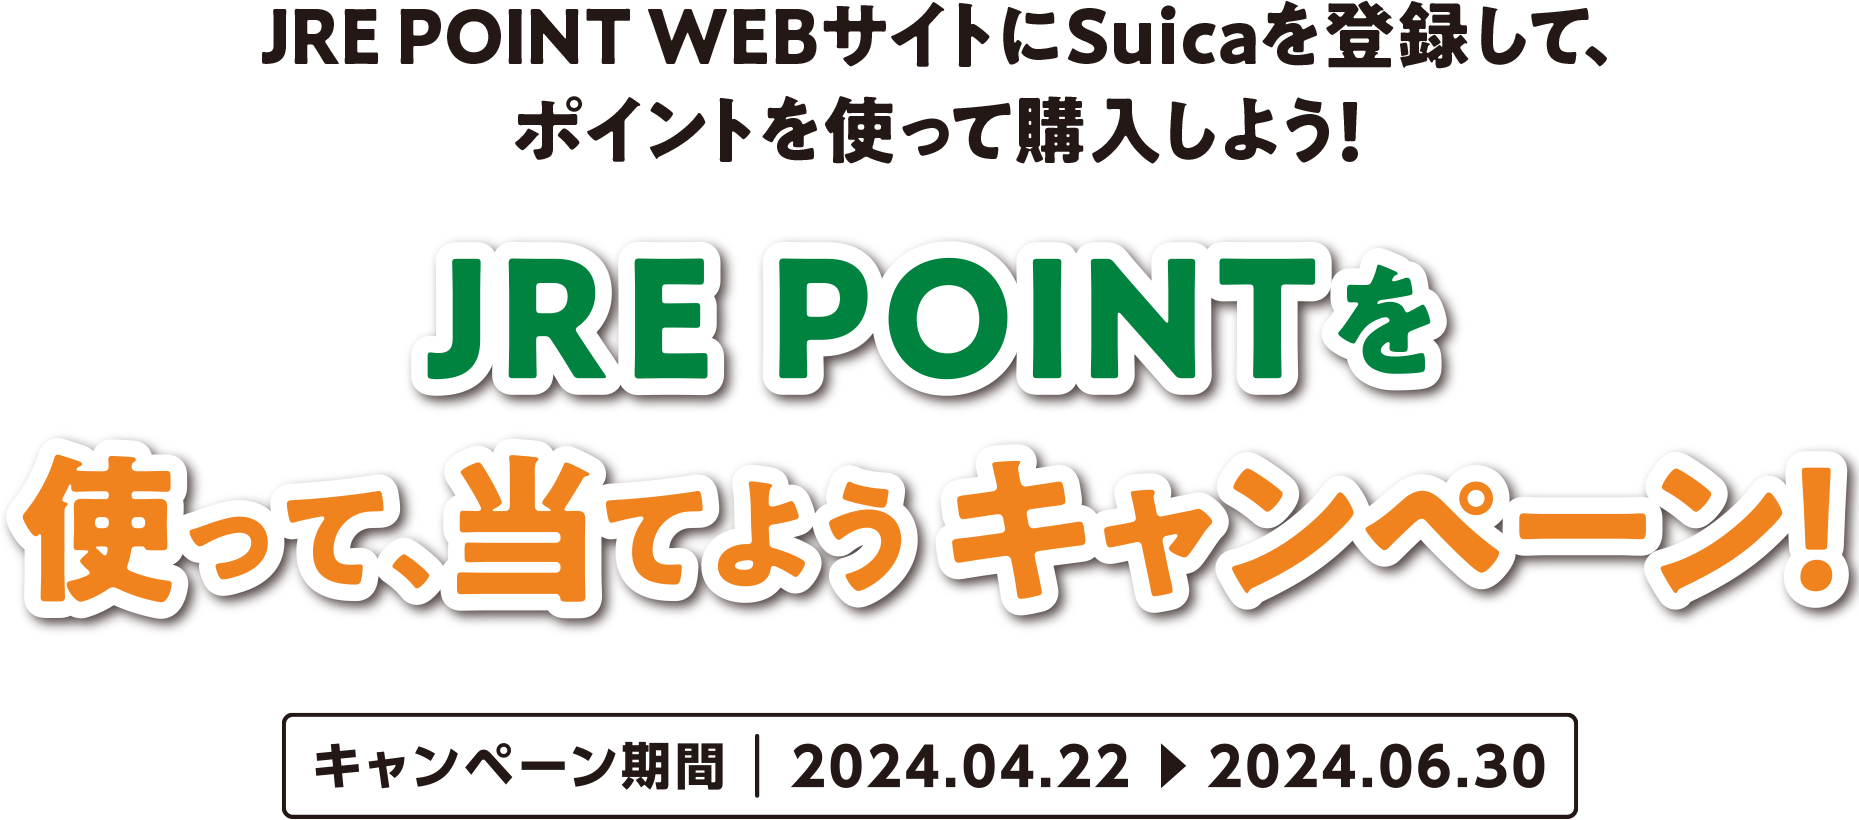 JRE POINT WEBサイトにSuicaを登録して、ポイントを使って購入しよう！ JRE POINTを使って、当てようキャンペーン! キャンペーン期間、2024年4月22日〜2024年6月30日